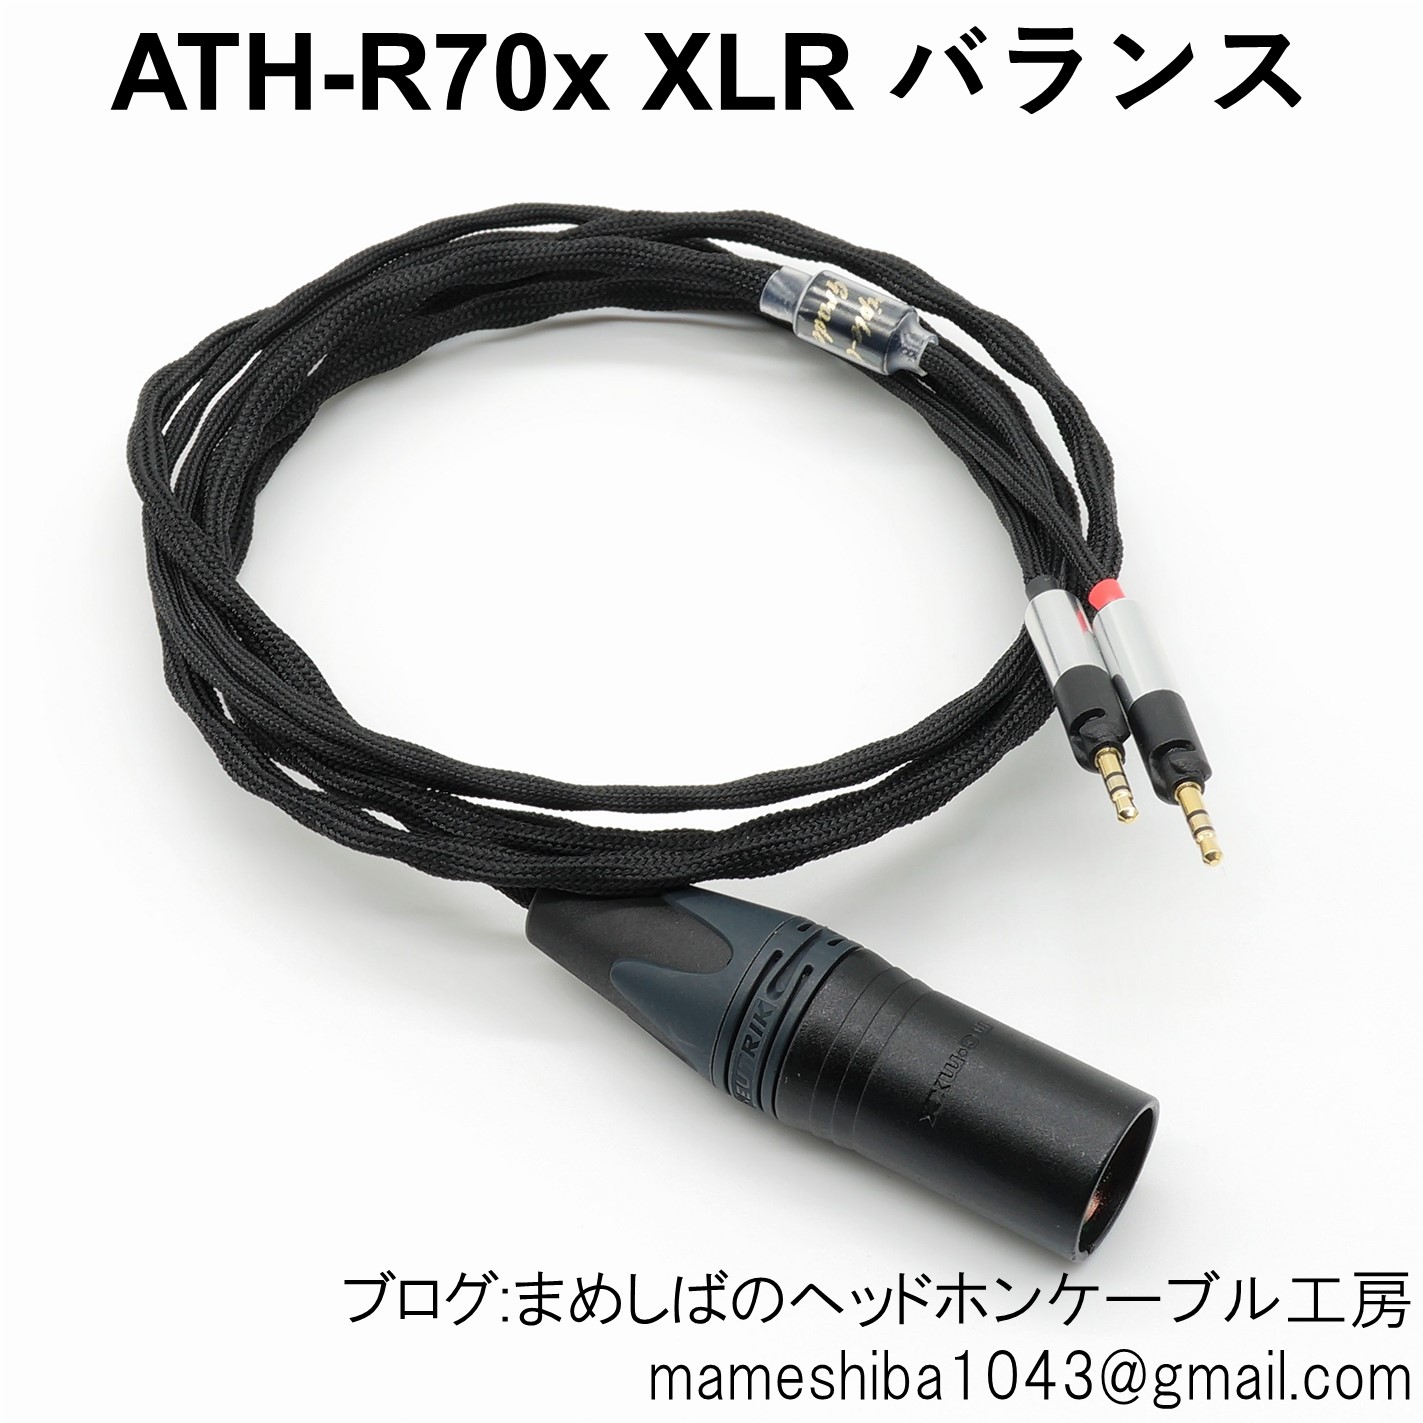 XLR4P バランス リケーブル SRH1840 ATH-R70x